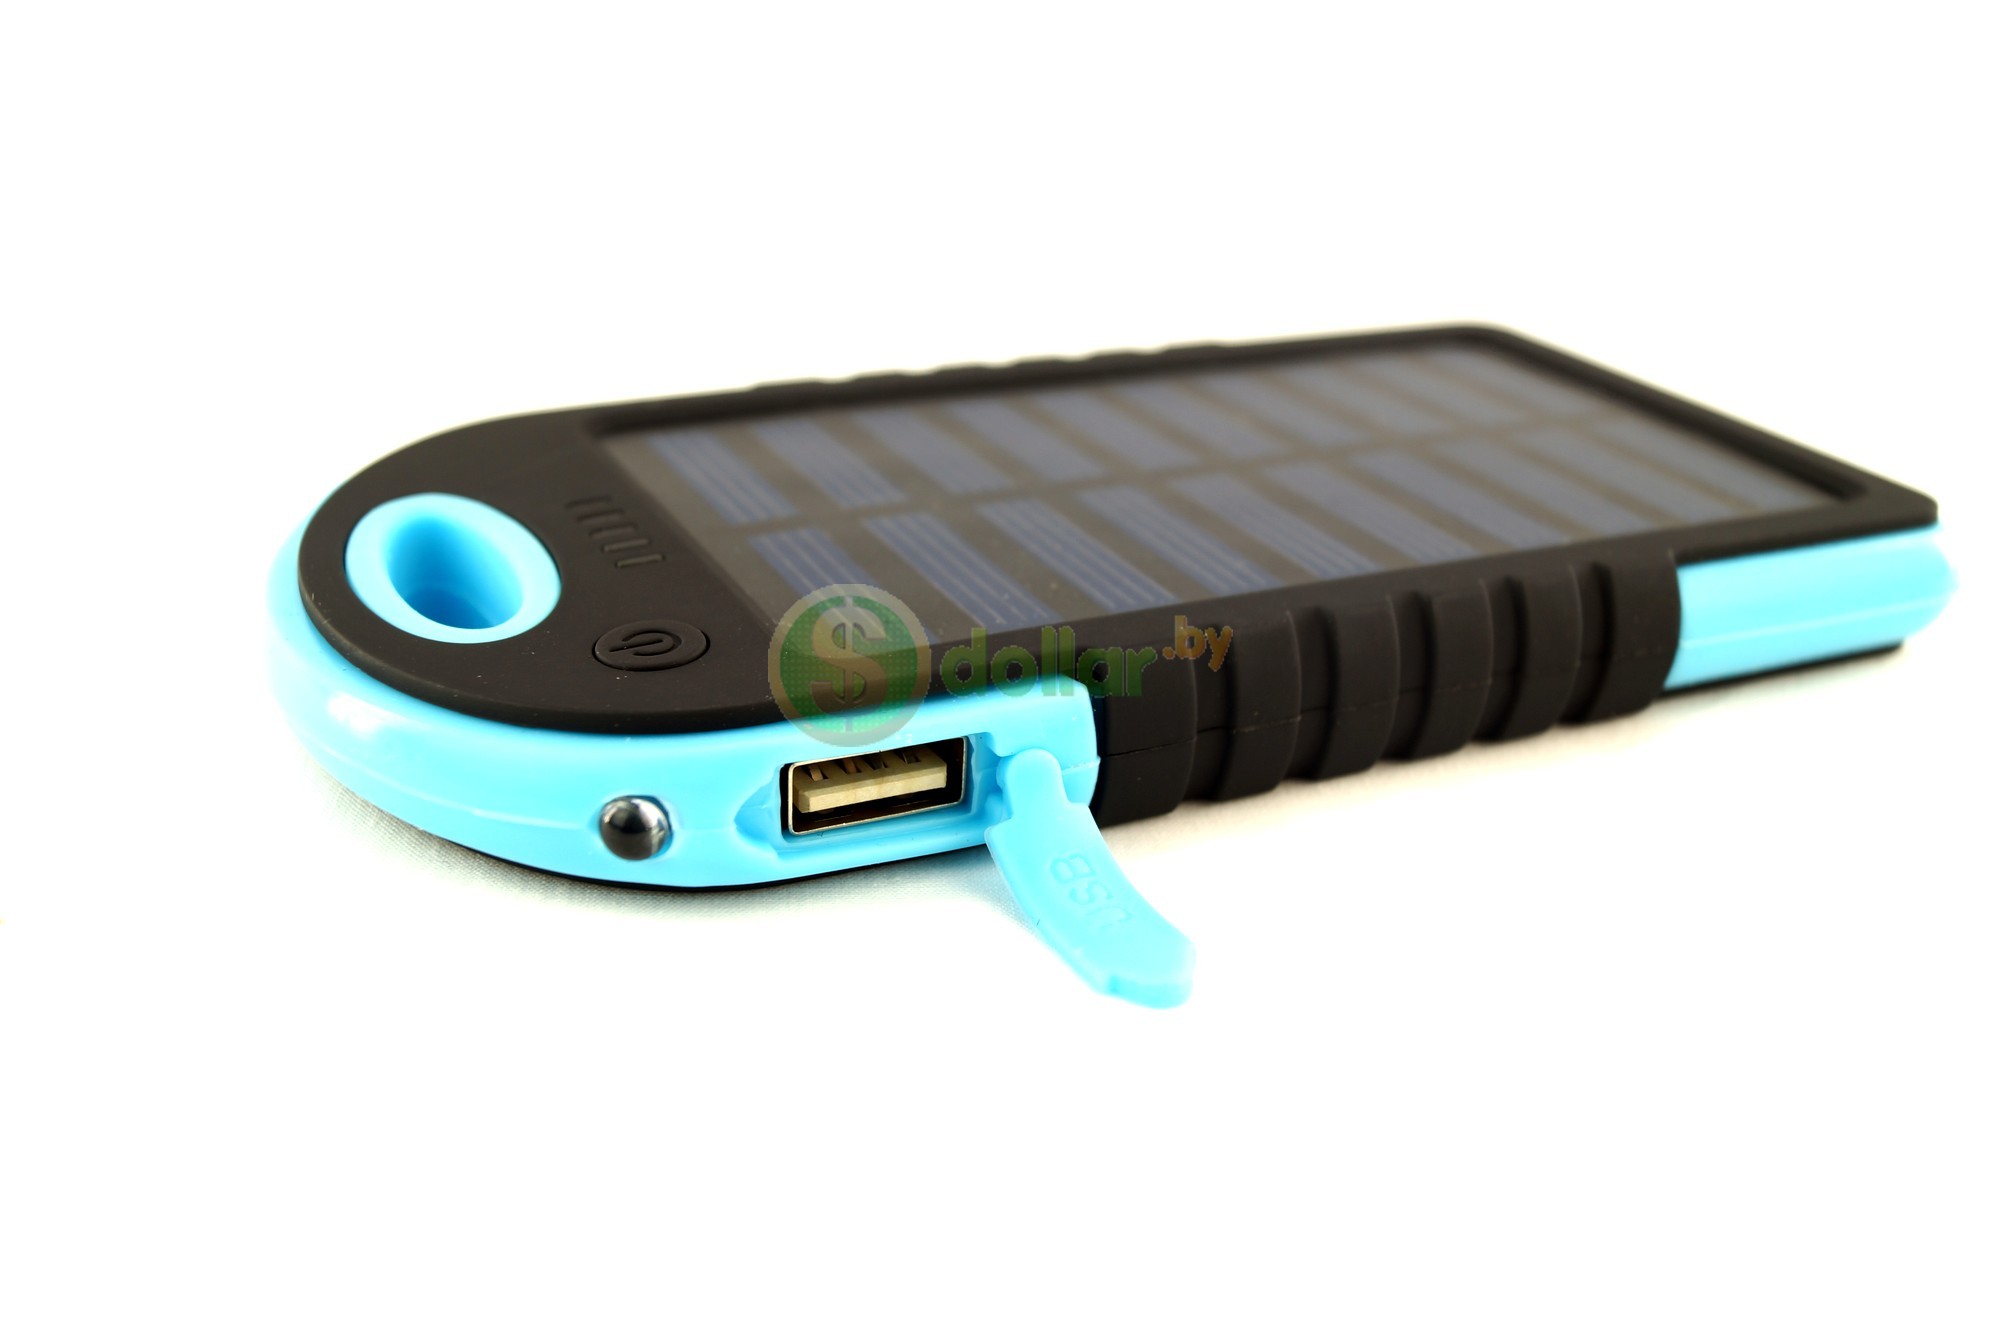 Походное солнечное зарядное устройство для телефонов, Iphone, GPS-навигаторов, планшетов и пр.